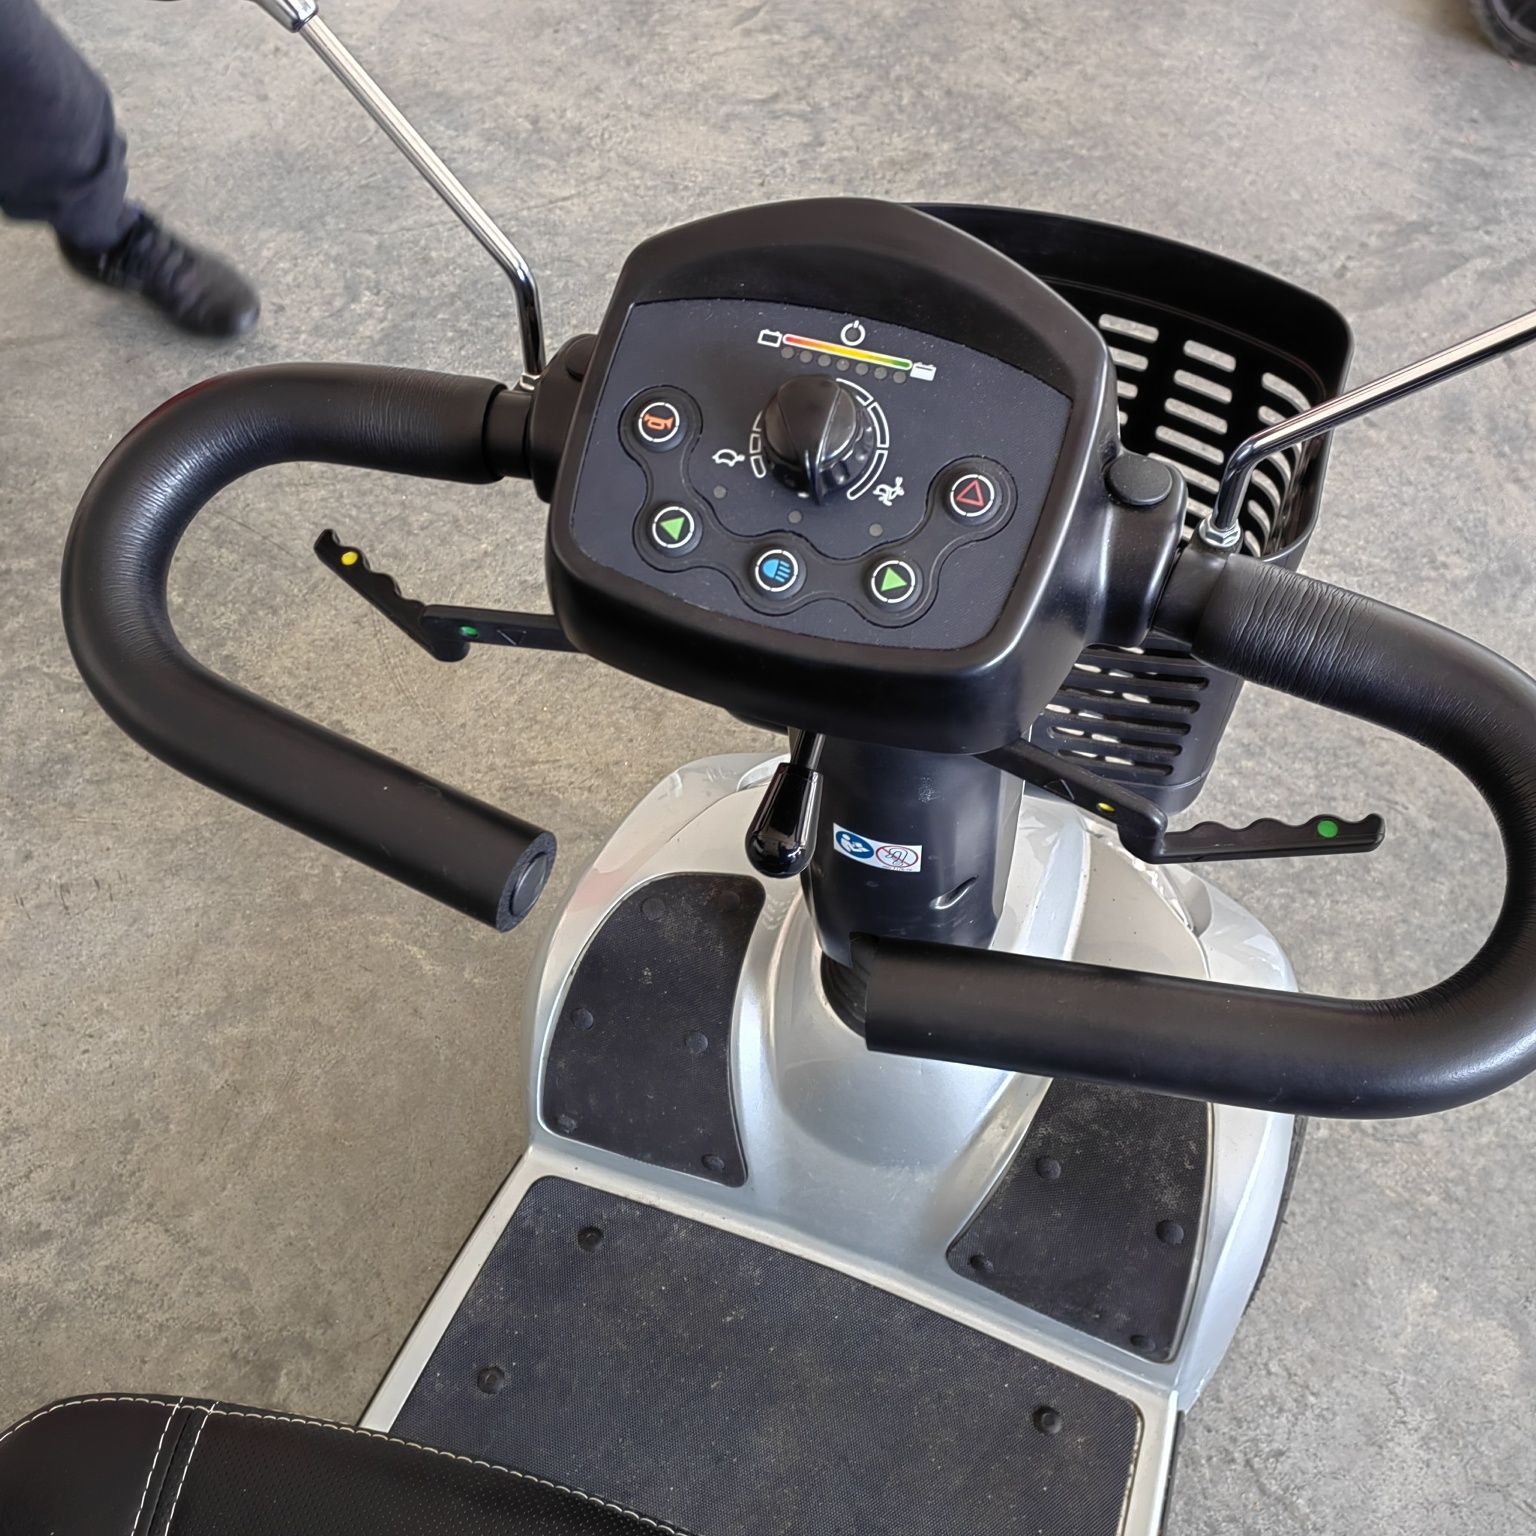 Електрически скутер за инвалиди Invacare Leo в гаранция.